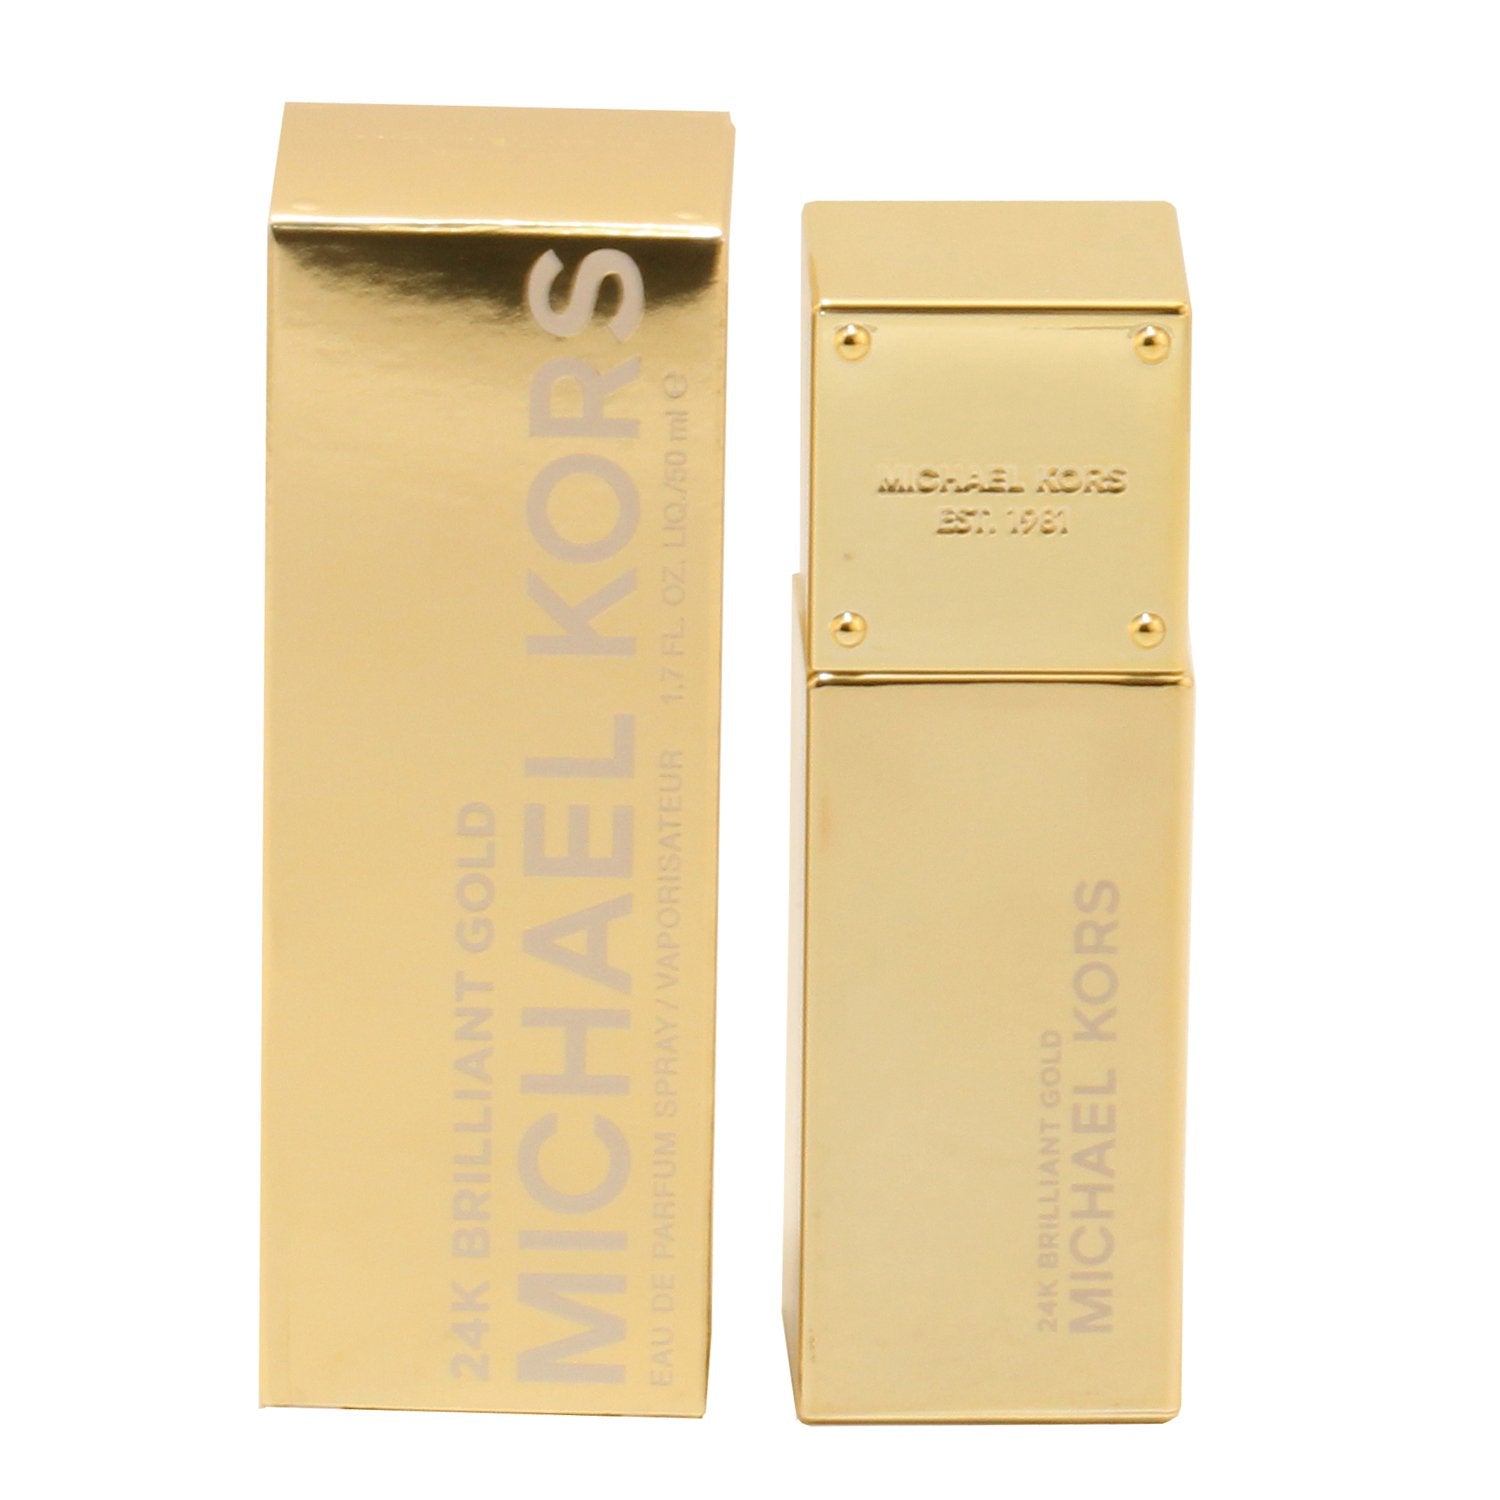 Perfume - MICHAEL KORS 24K BRILLIANT GOLD FOR WOMEN - EAU DE PARFUM SPRAY